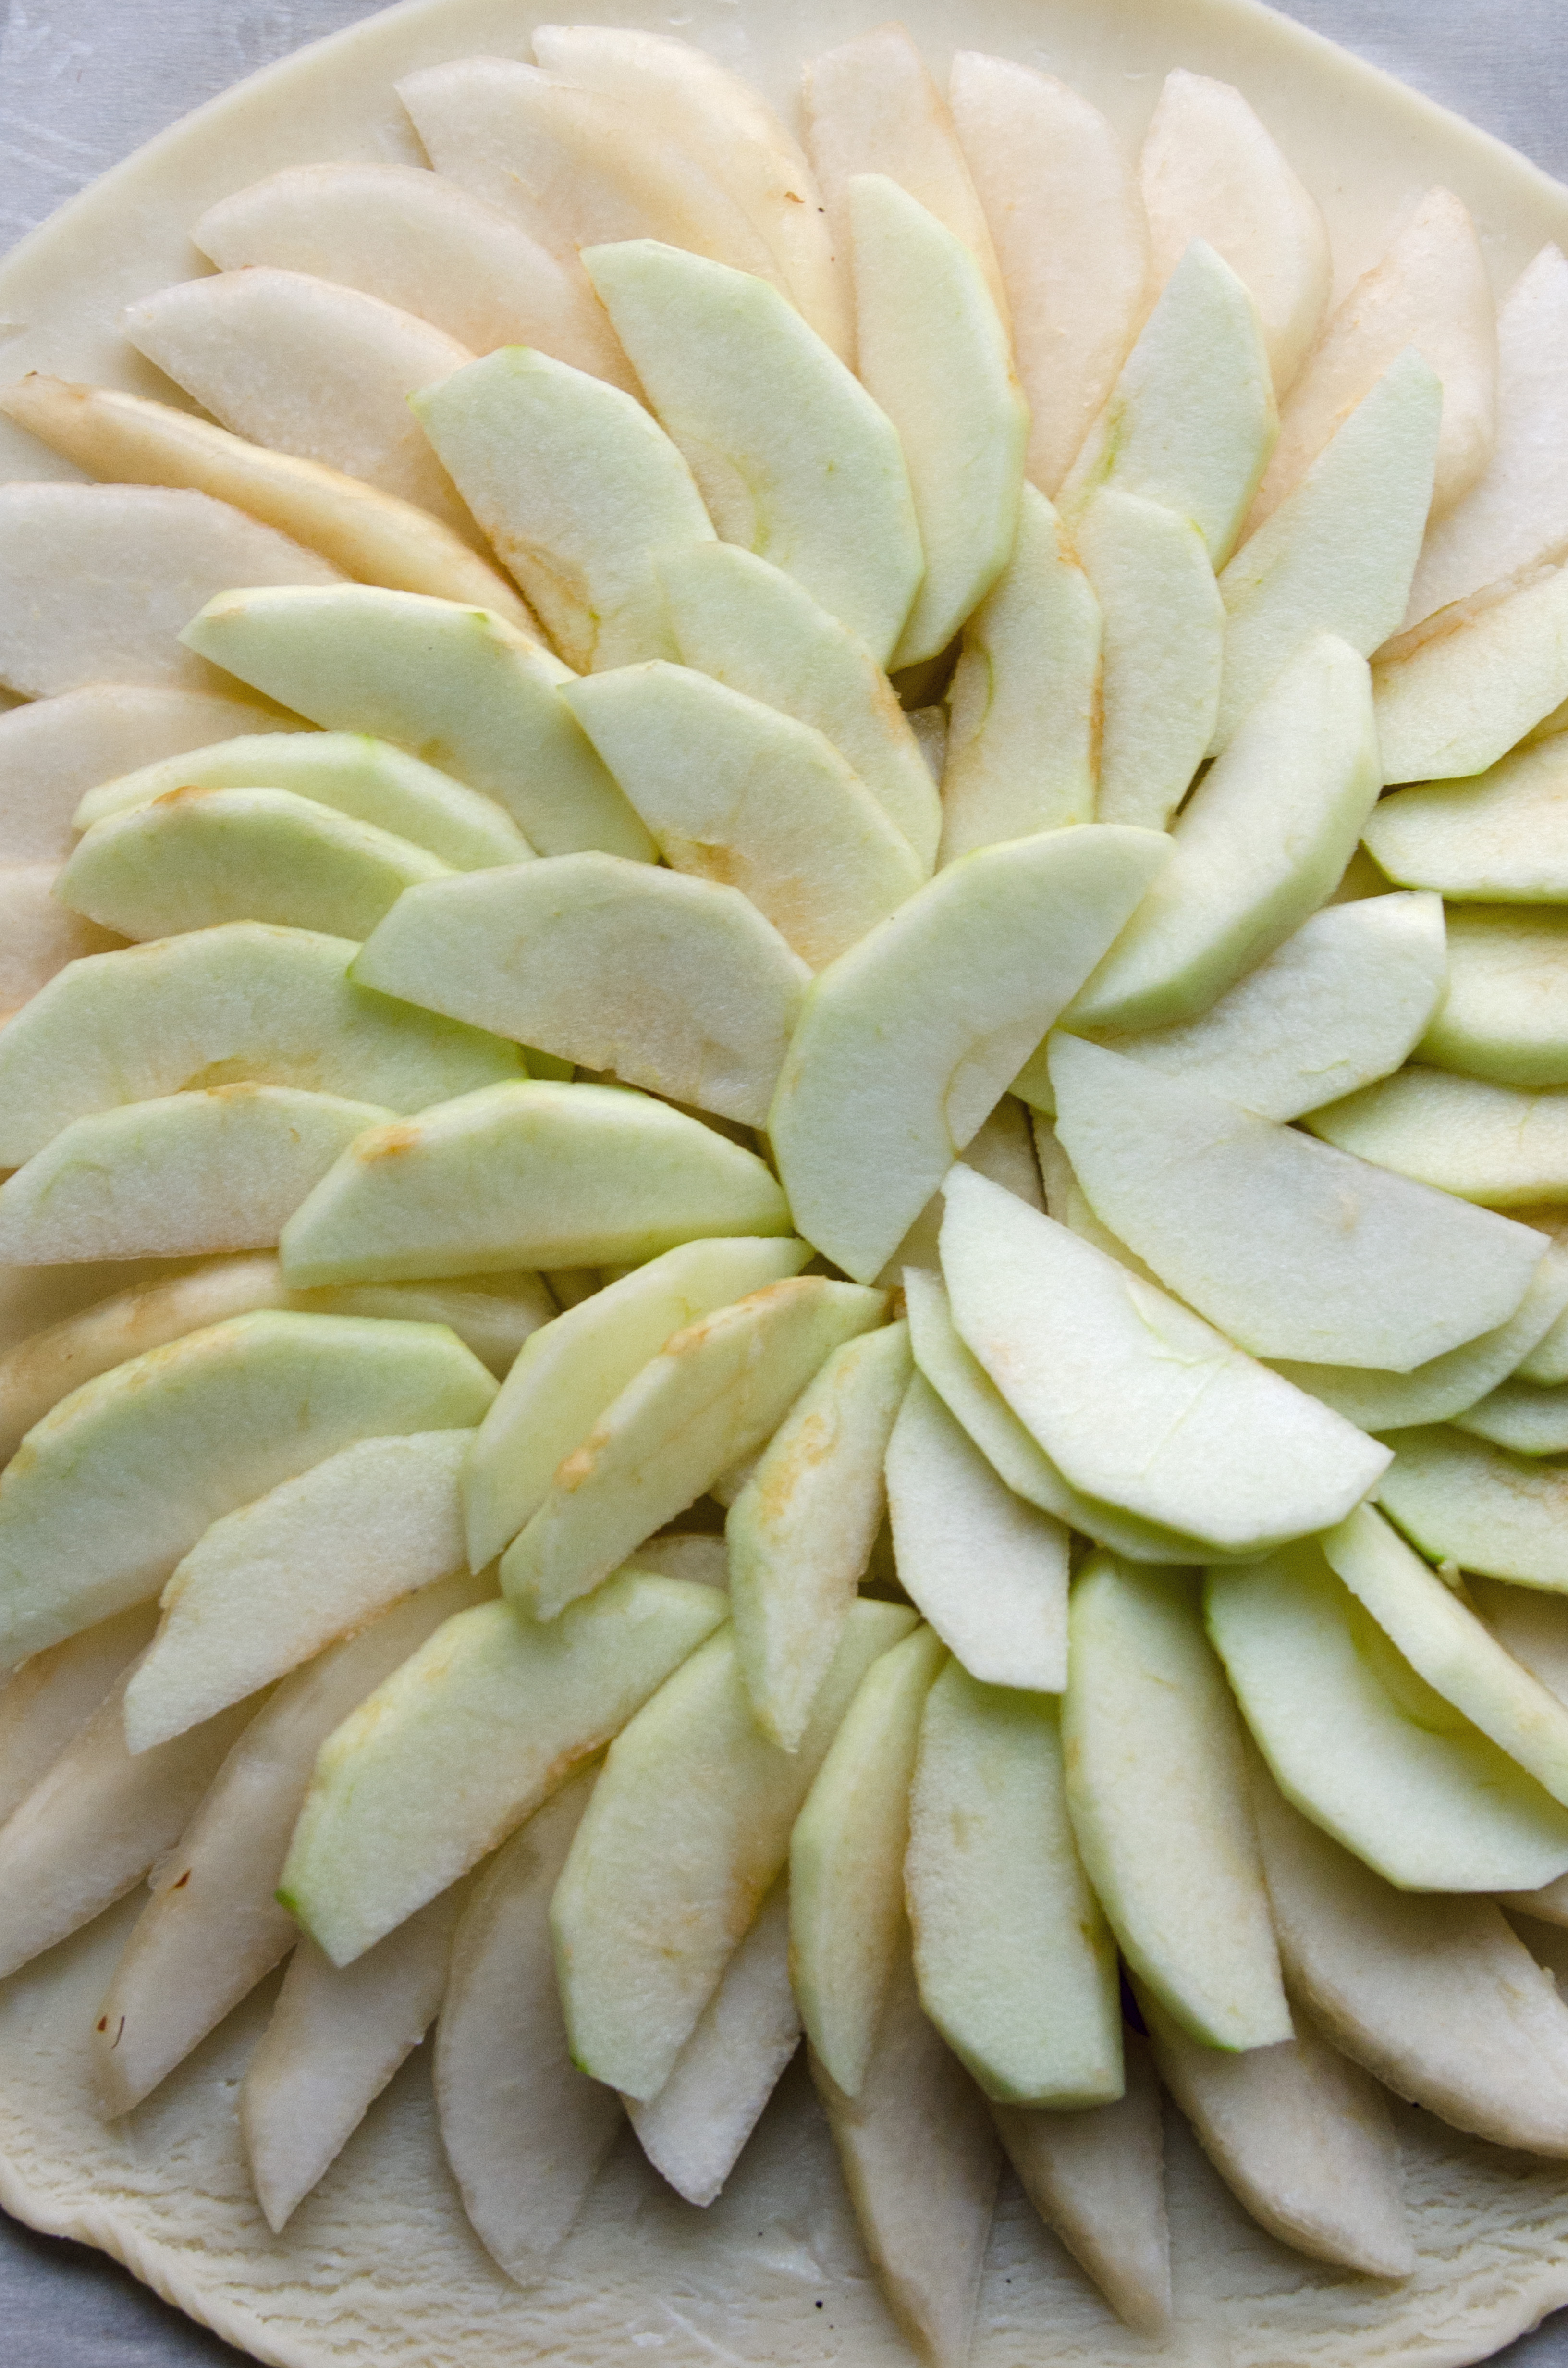 George Dickel Rye French Apple Pear Tart